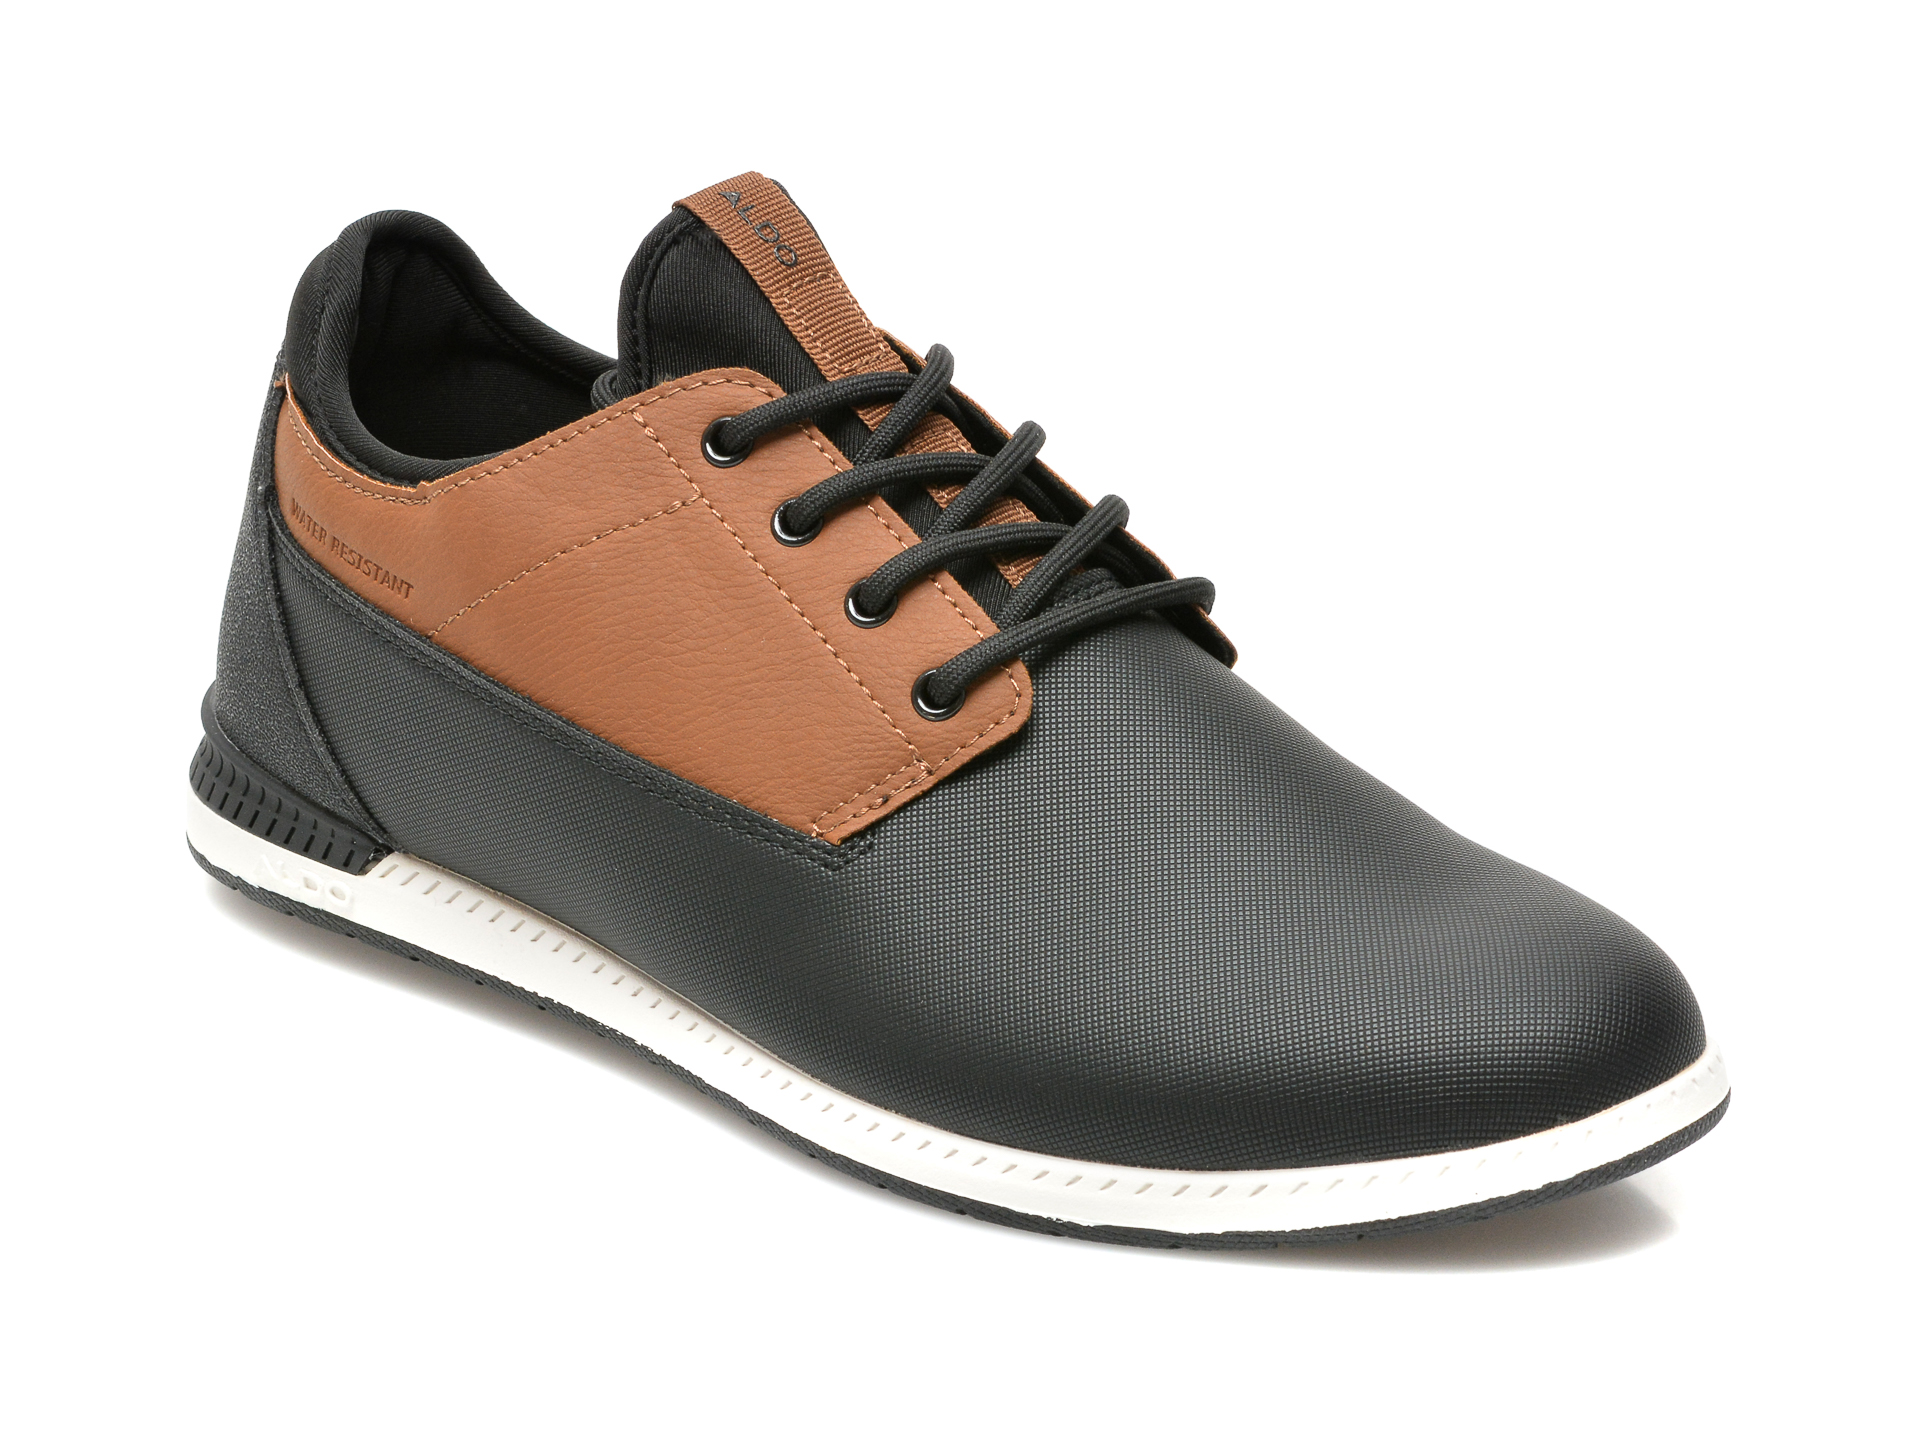 Pantofi ALDO negri, BLUFFERS-WR240, din piele ecologica Aldo imagine reduceri